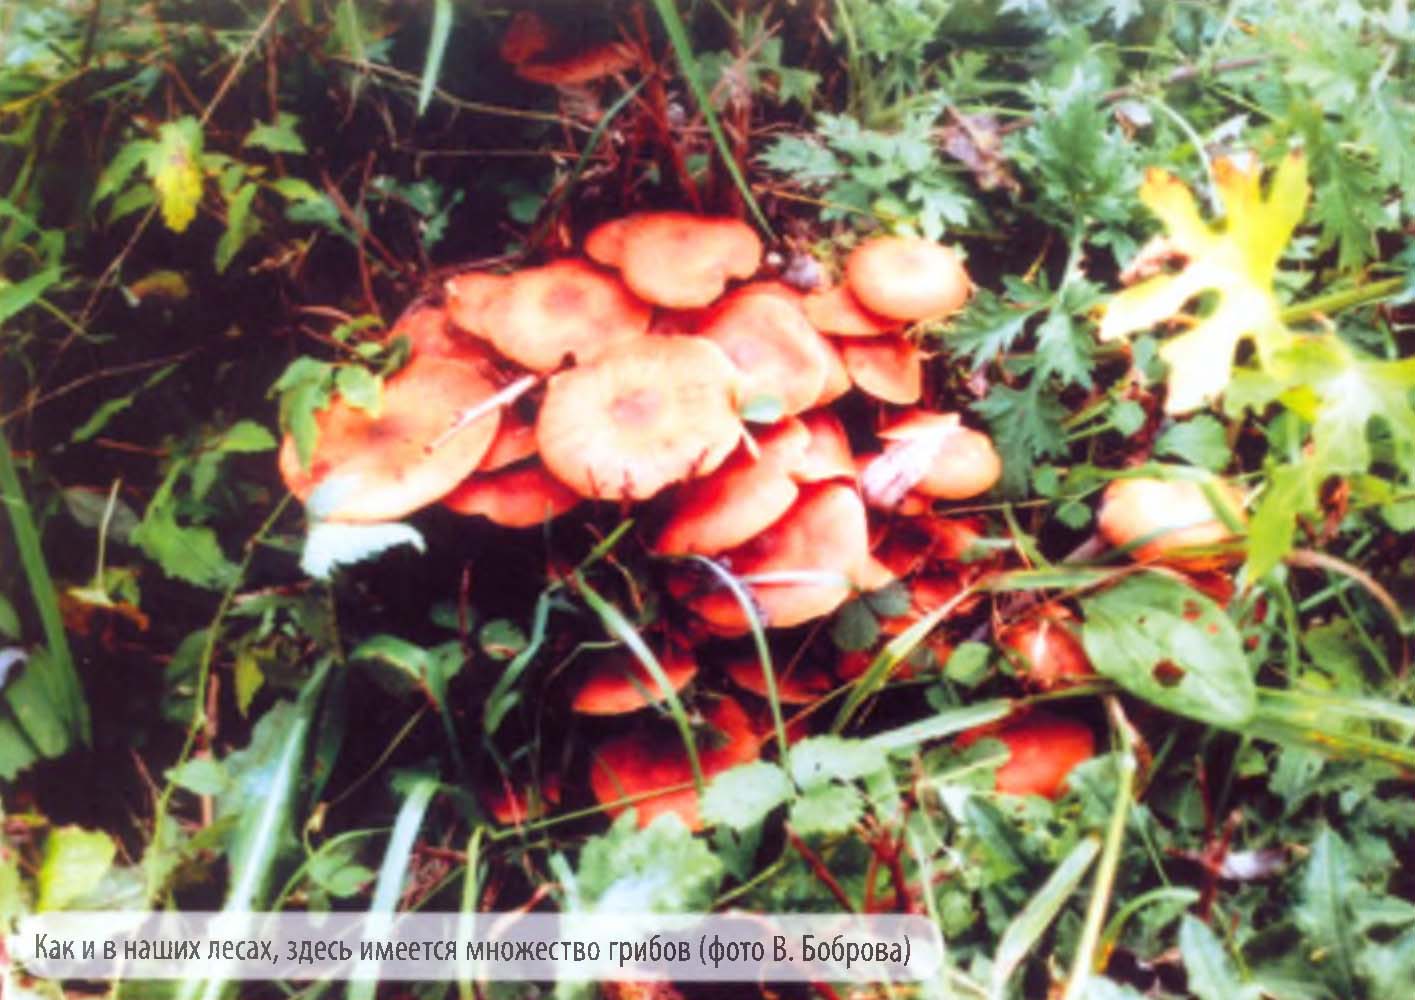 Как и в наших лесах, здесь имеется множество грибов (фото В. Боброва).